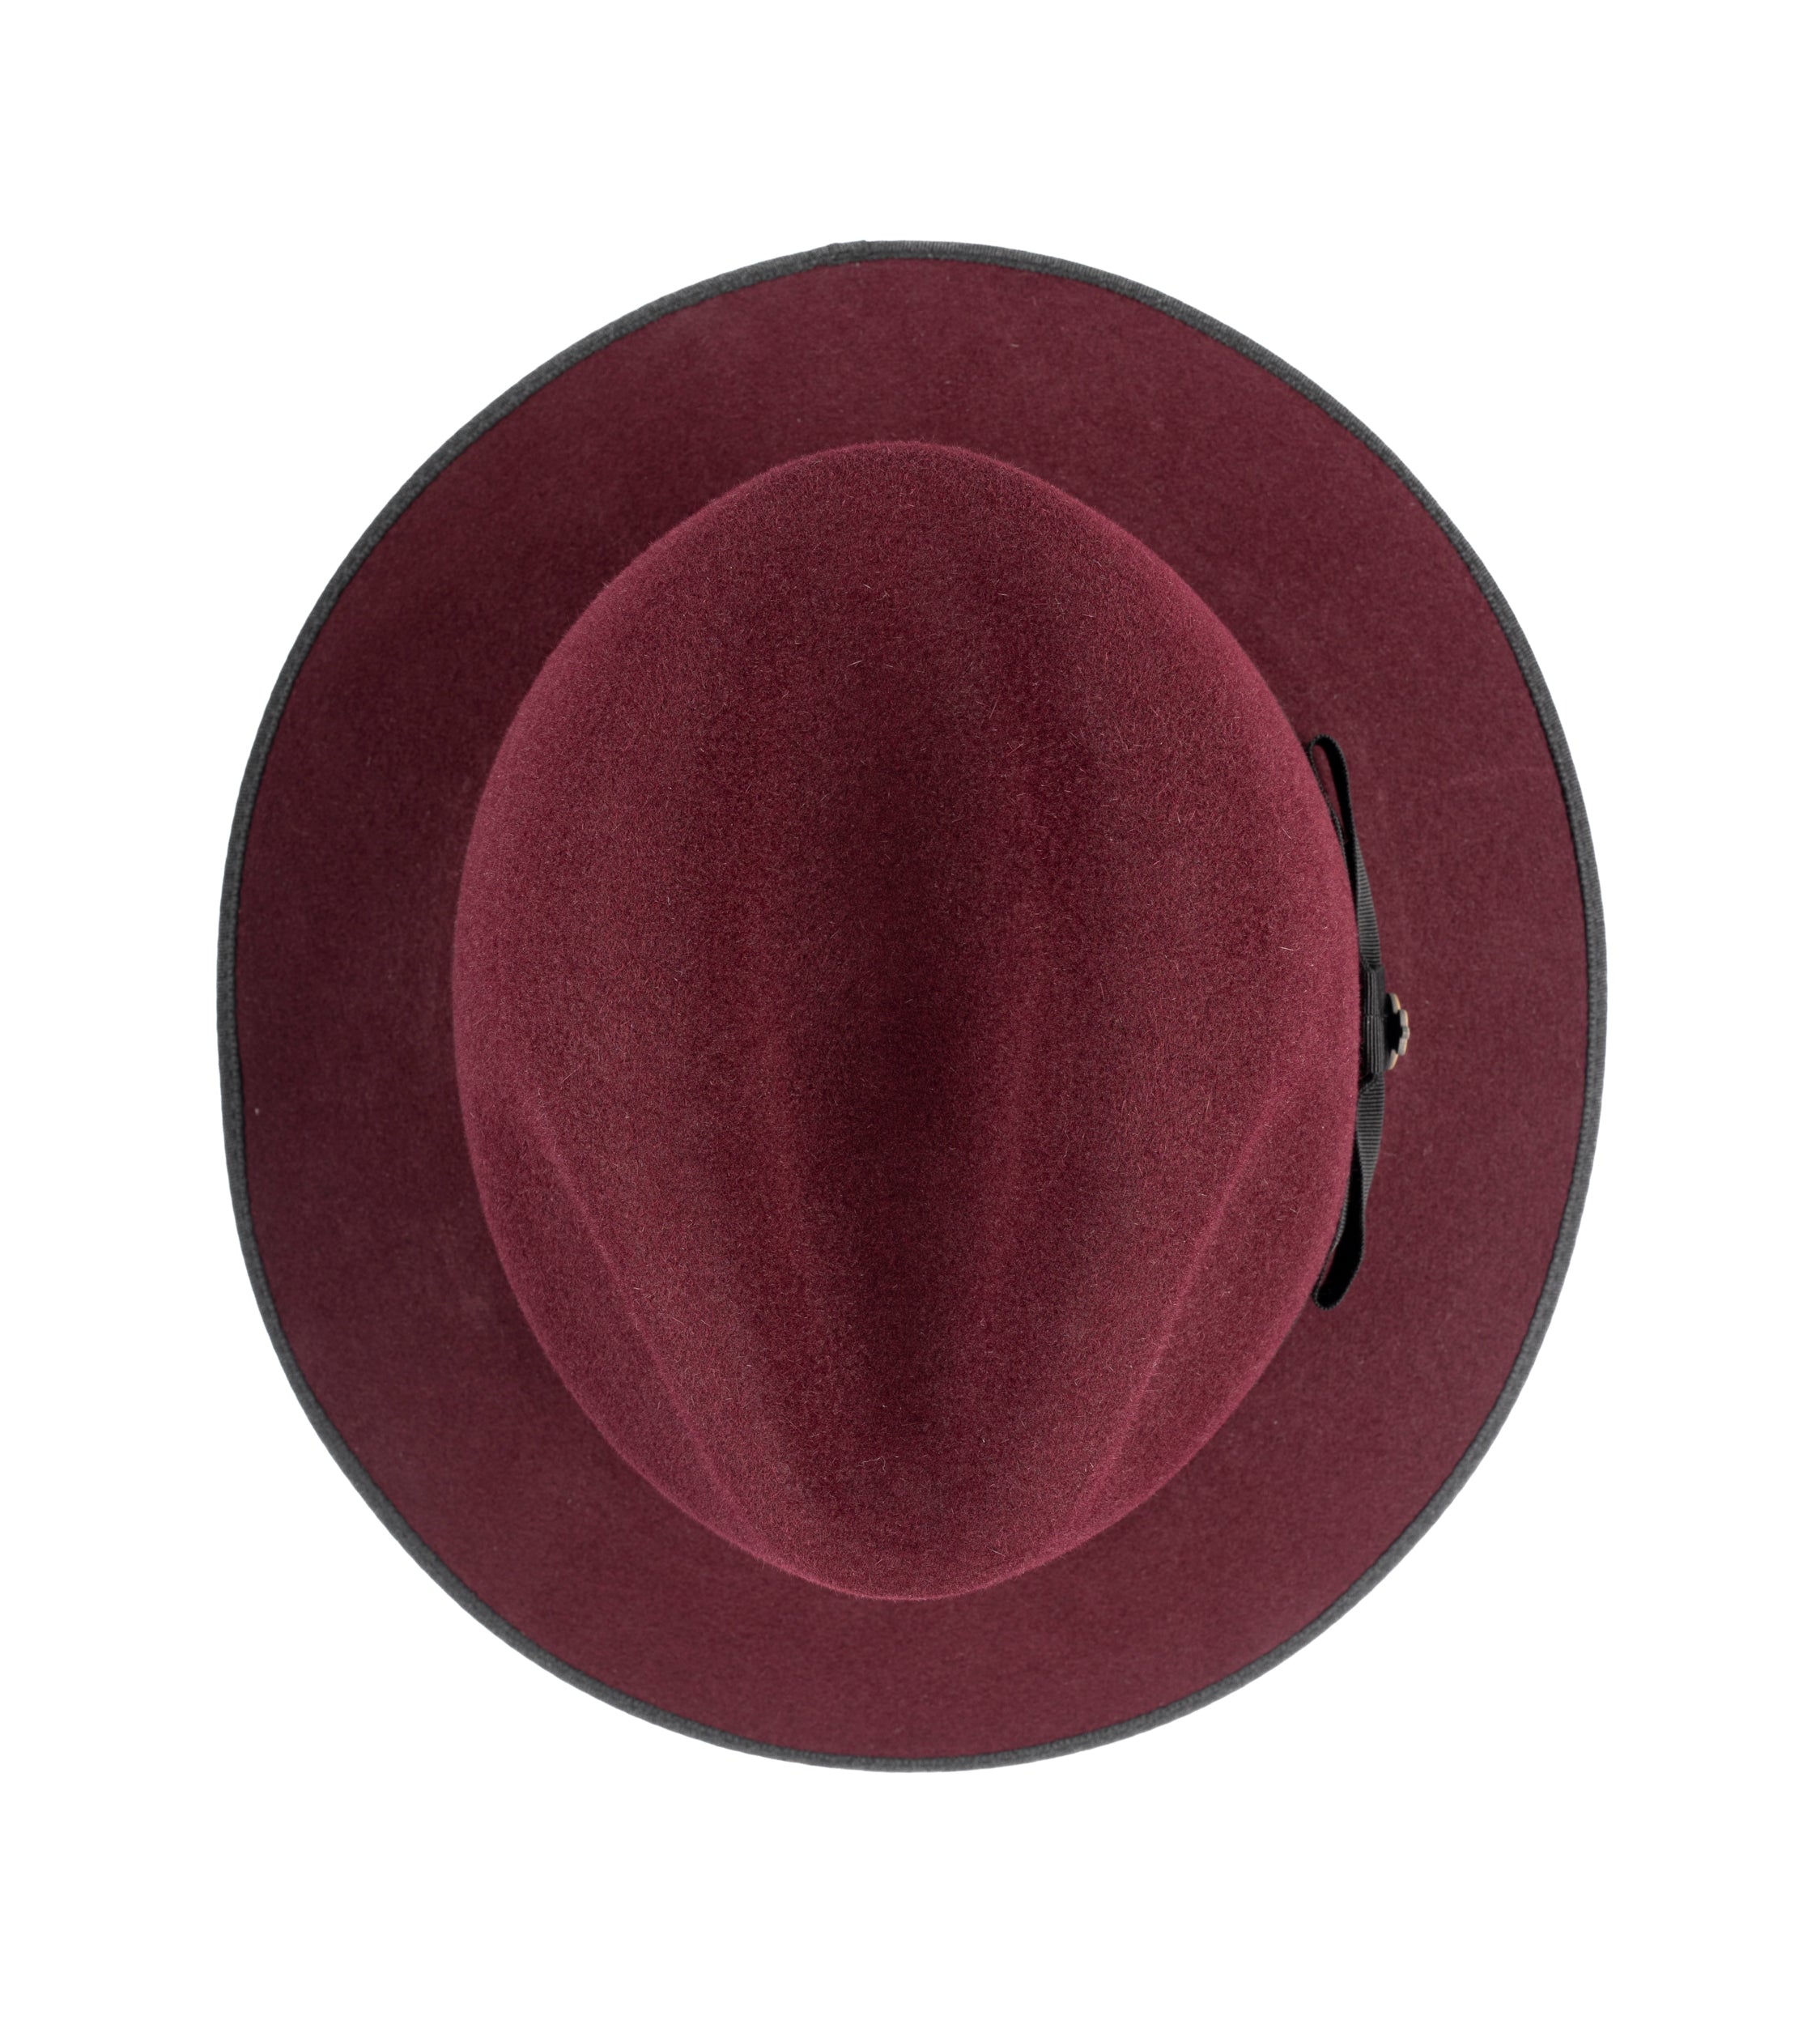 County Down Brim Fur Felt Trilby Hat